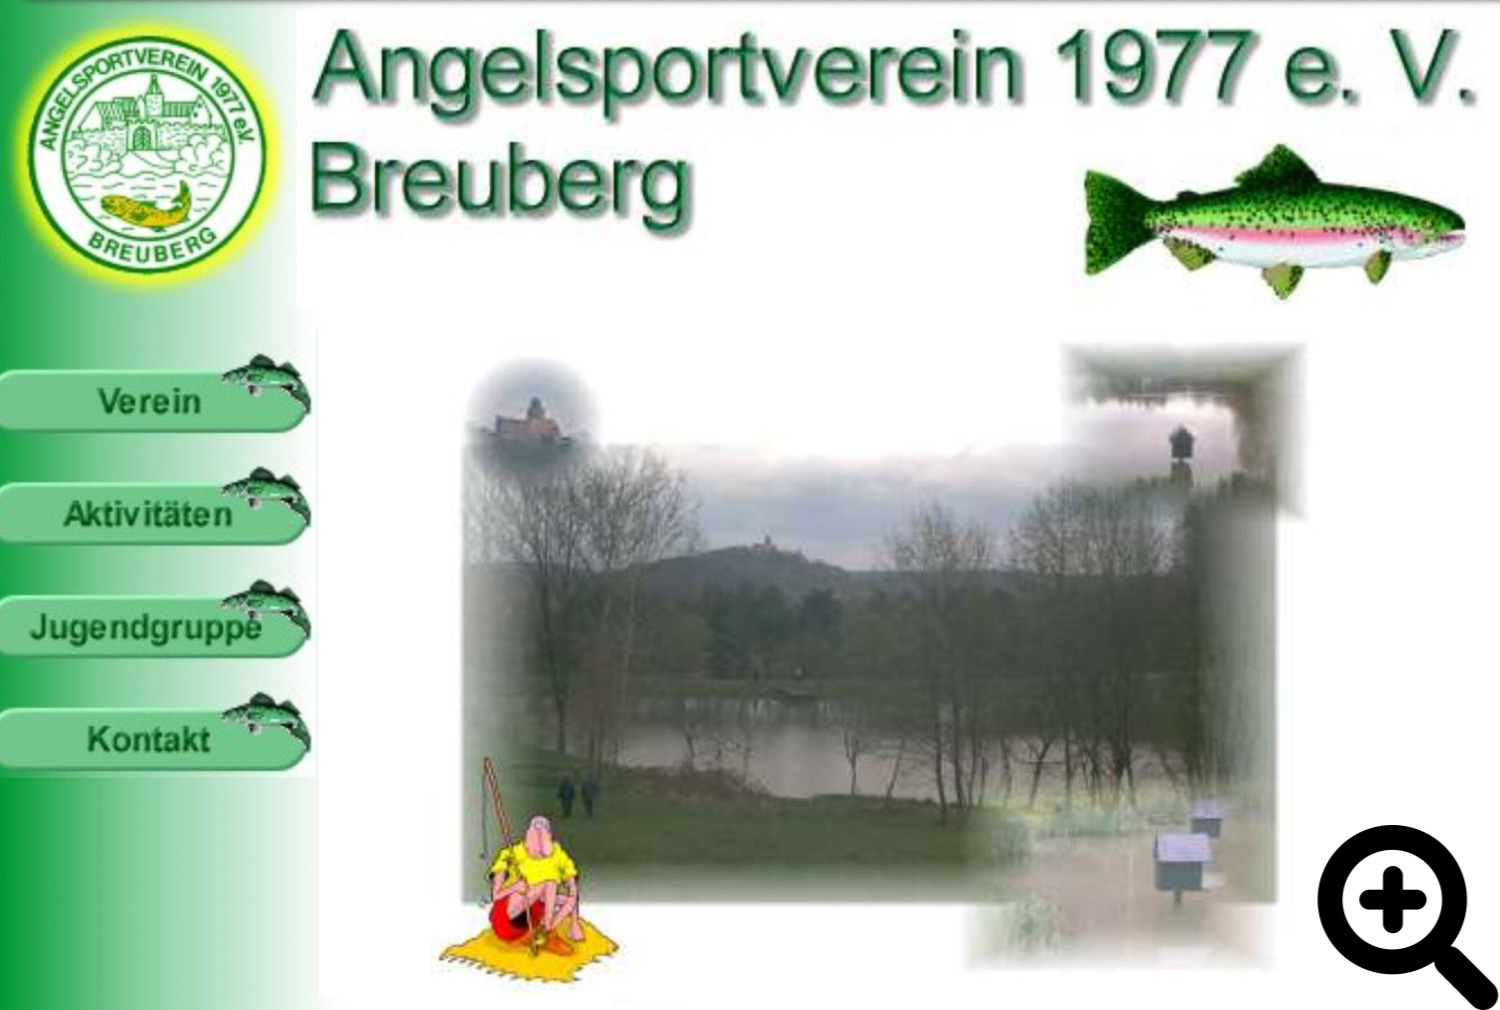 Angelsportverein 1977 e.V. Breuberg